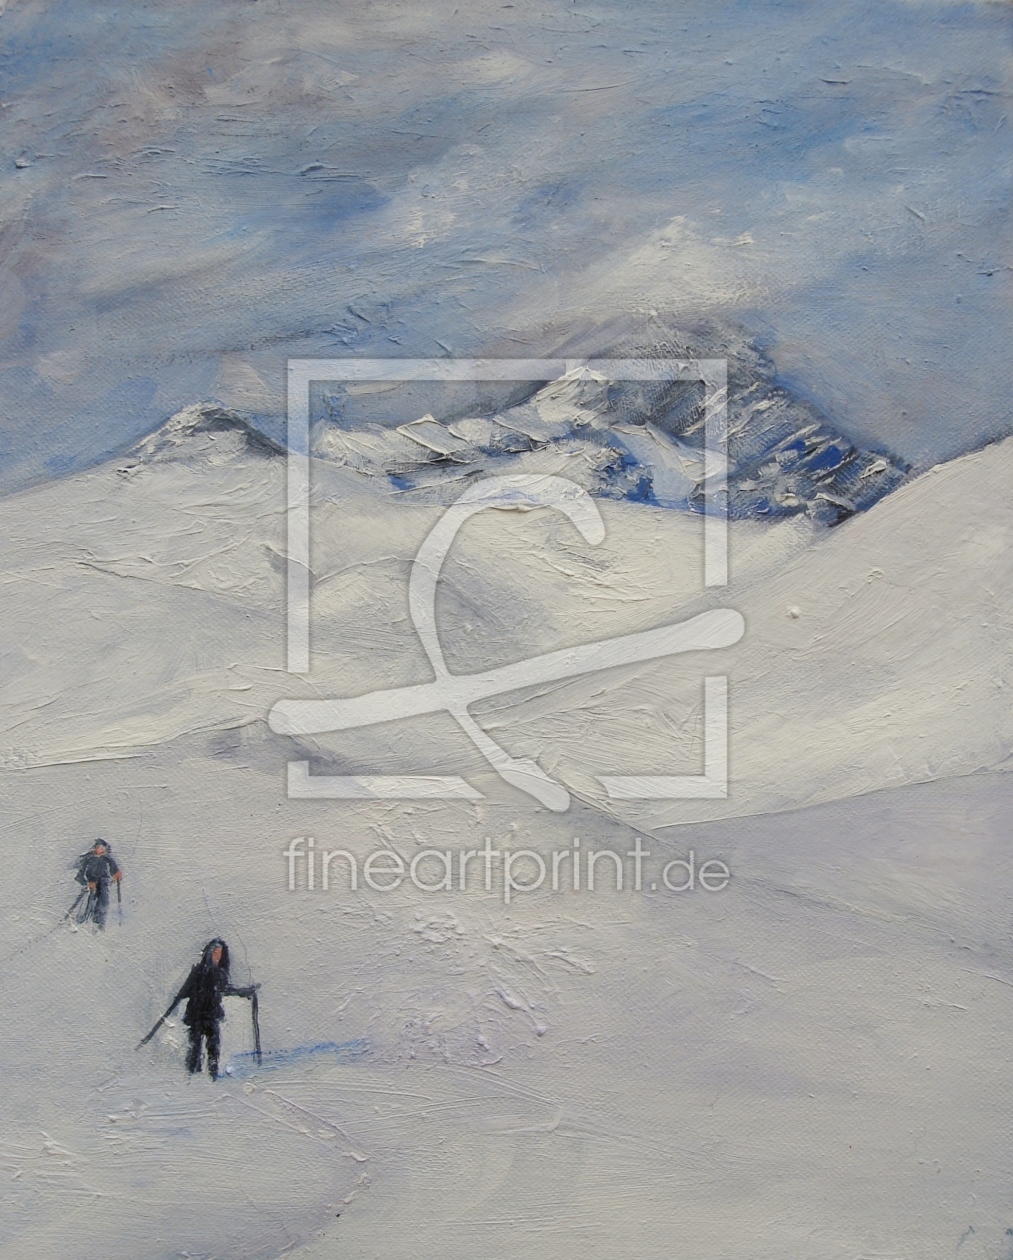 Bild-Nr.: 11445297 Wandern im Schnee erstellt von wilsbech